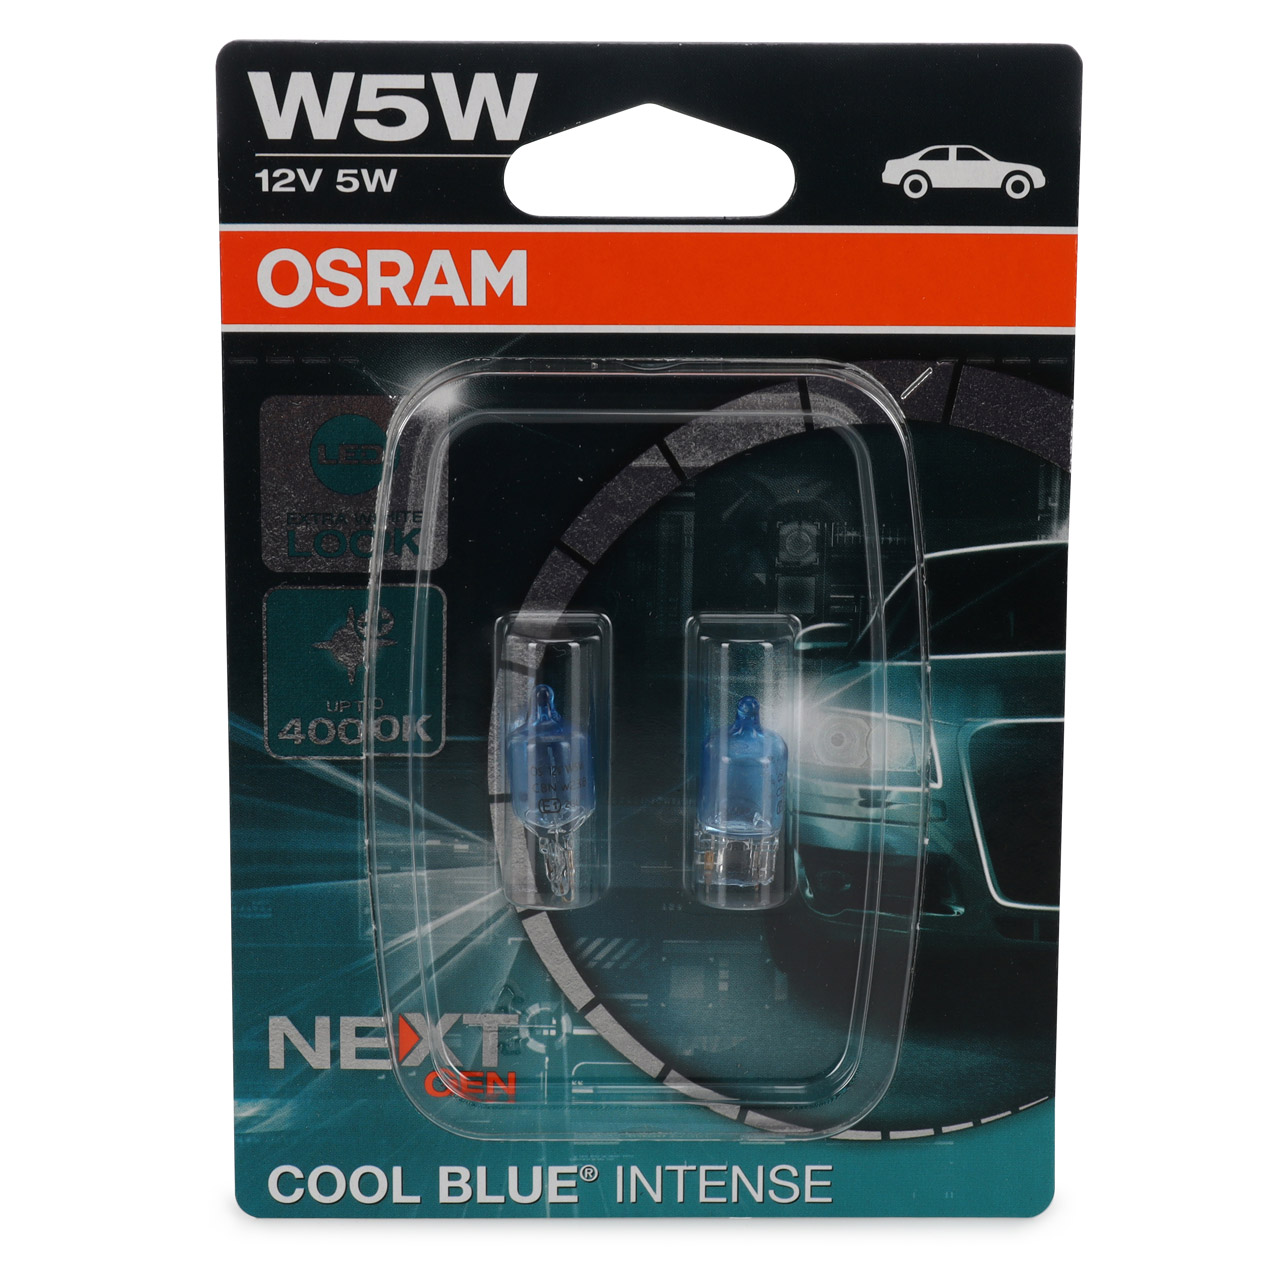 OSRAM Original Line W5W 12V 5W Glühbirne - Schachtel mit 10 Stück